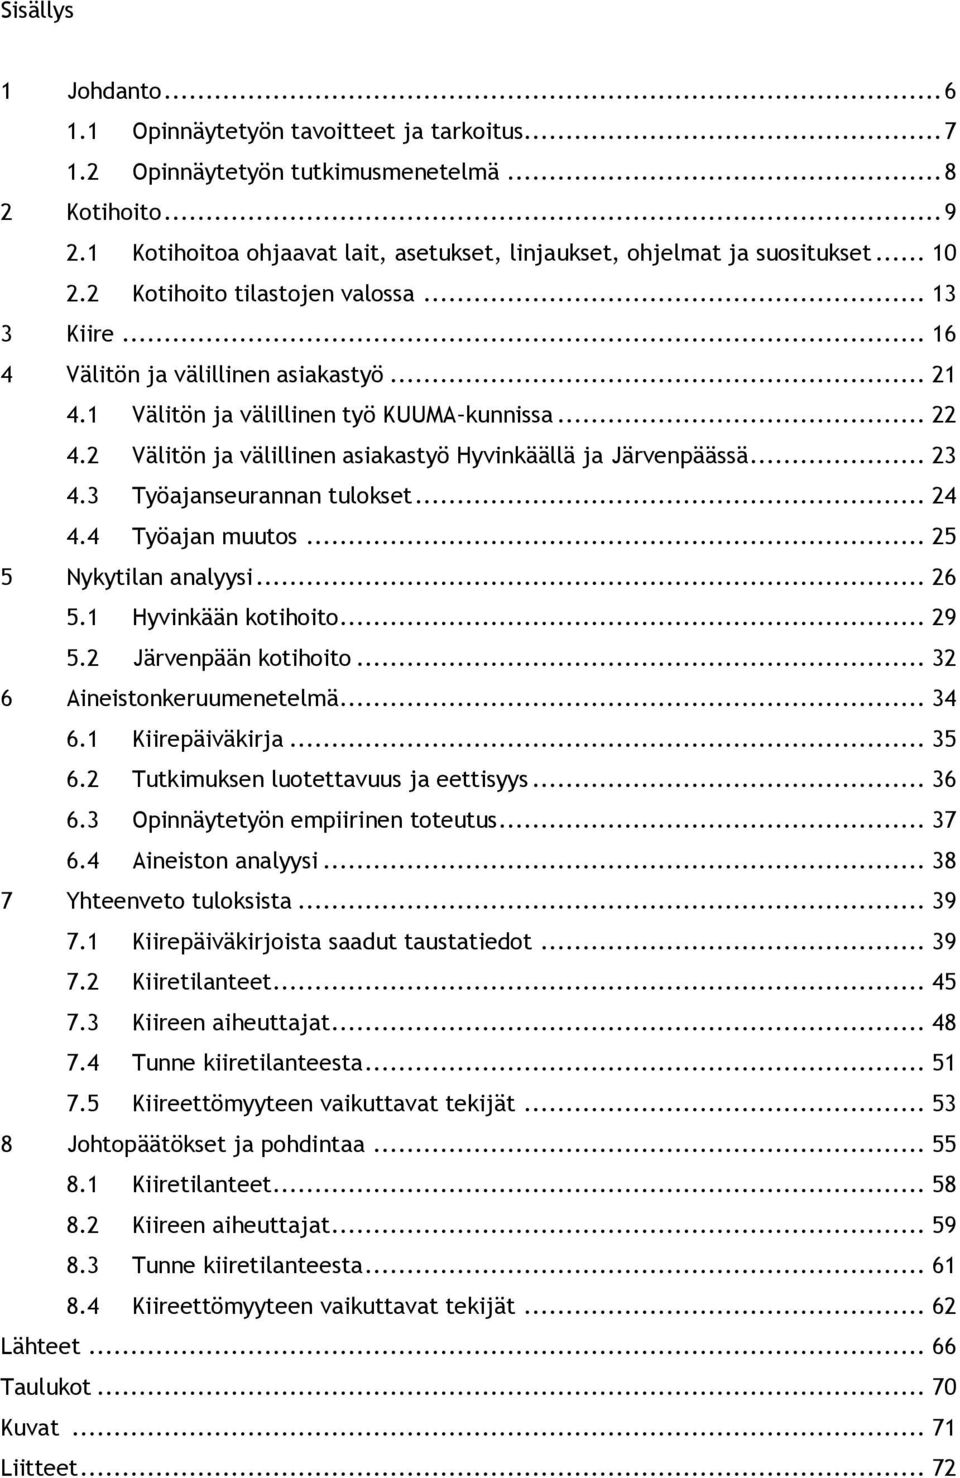 1 Välitön ja välillinen työ KUUMA kunnissa... 22 4.2 Välitön ja välillinen asiakastyö Hyvinkäällä ja Järvenpäässä... 23 4.3 Työajanseurannan tulokset... 24 4.4 Työajan muutos... 25 5 Nykytilan analyysi.